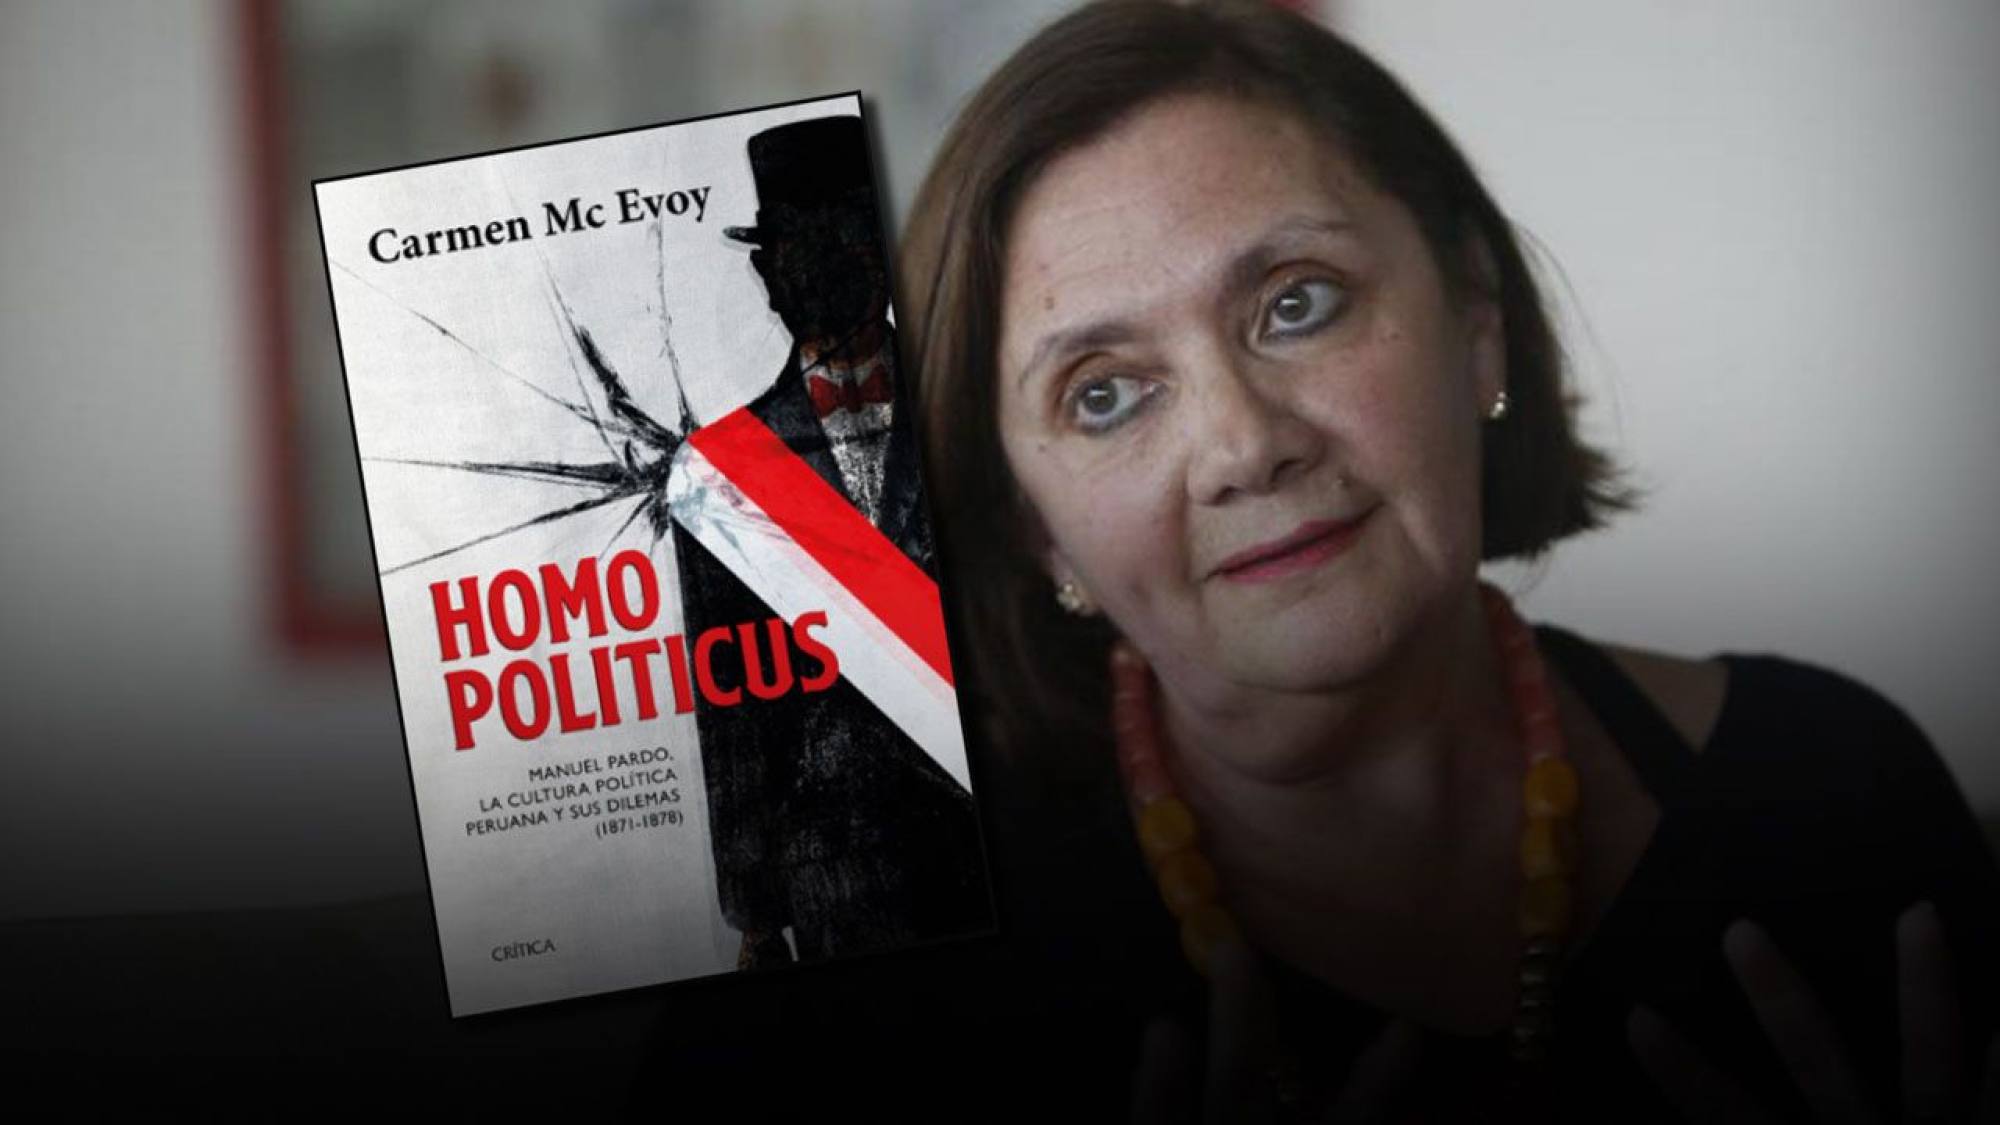 ¿Por qué se lee tan bien Homo Politicus de Carmen Mc Evoy?, Epicentro TV